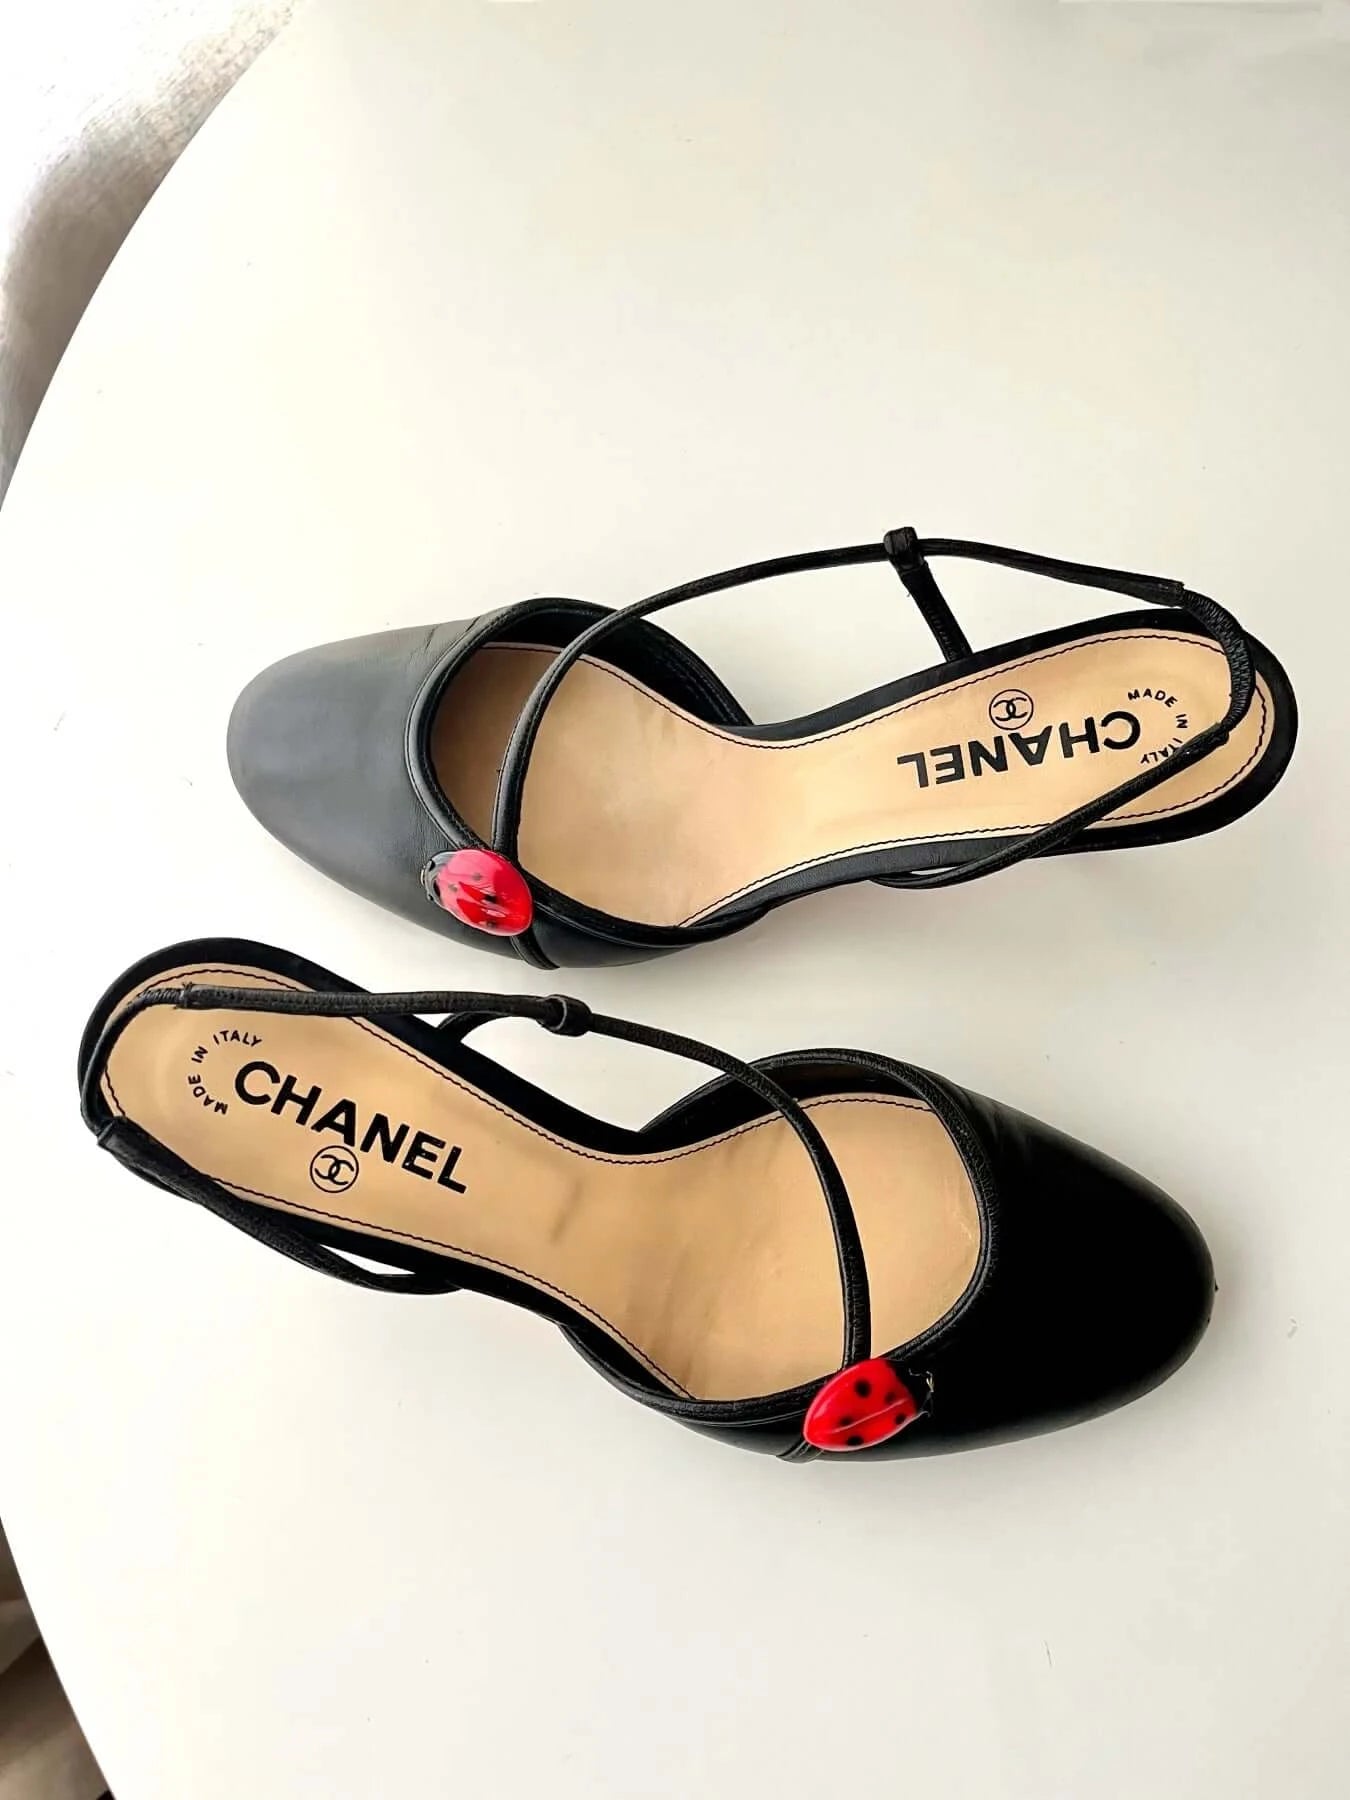 Chanel Slingback Heels with Ladybug